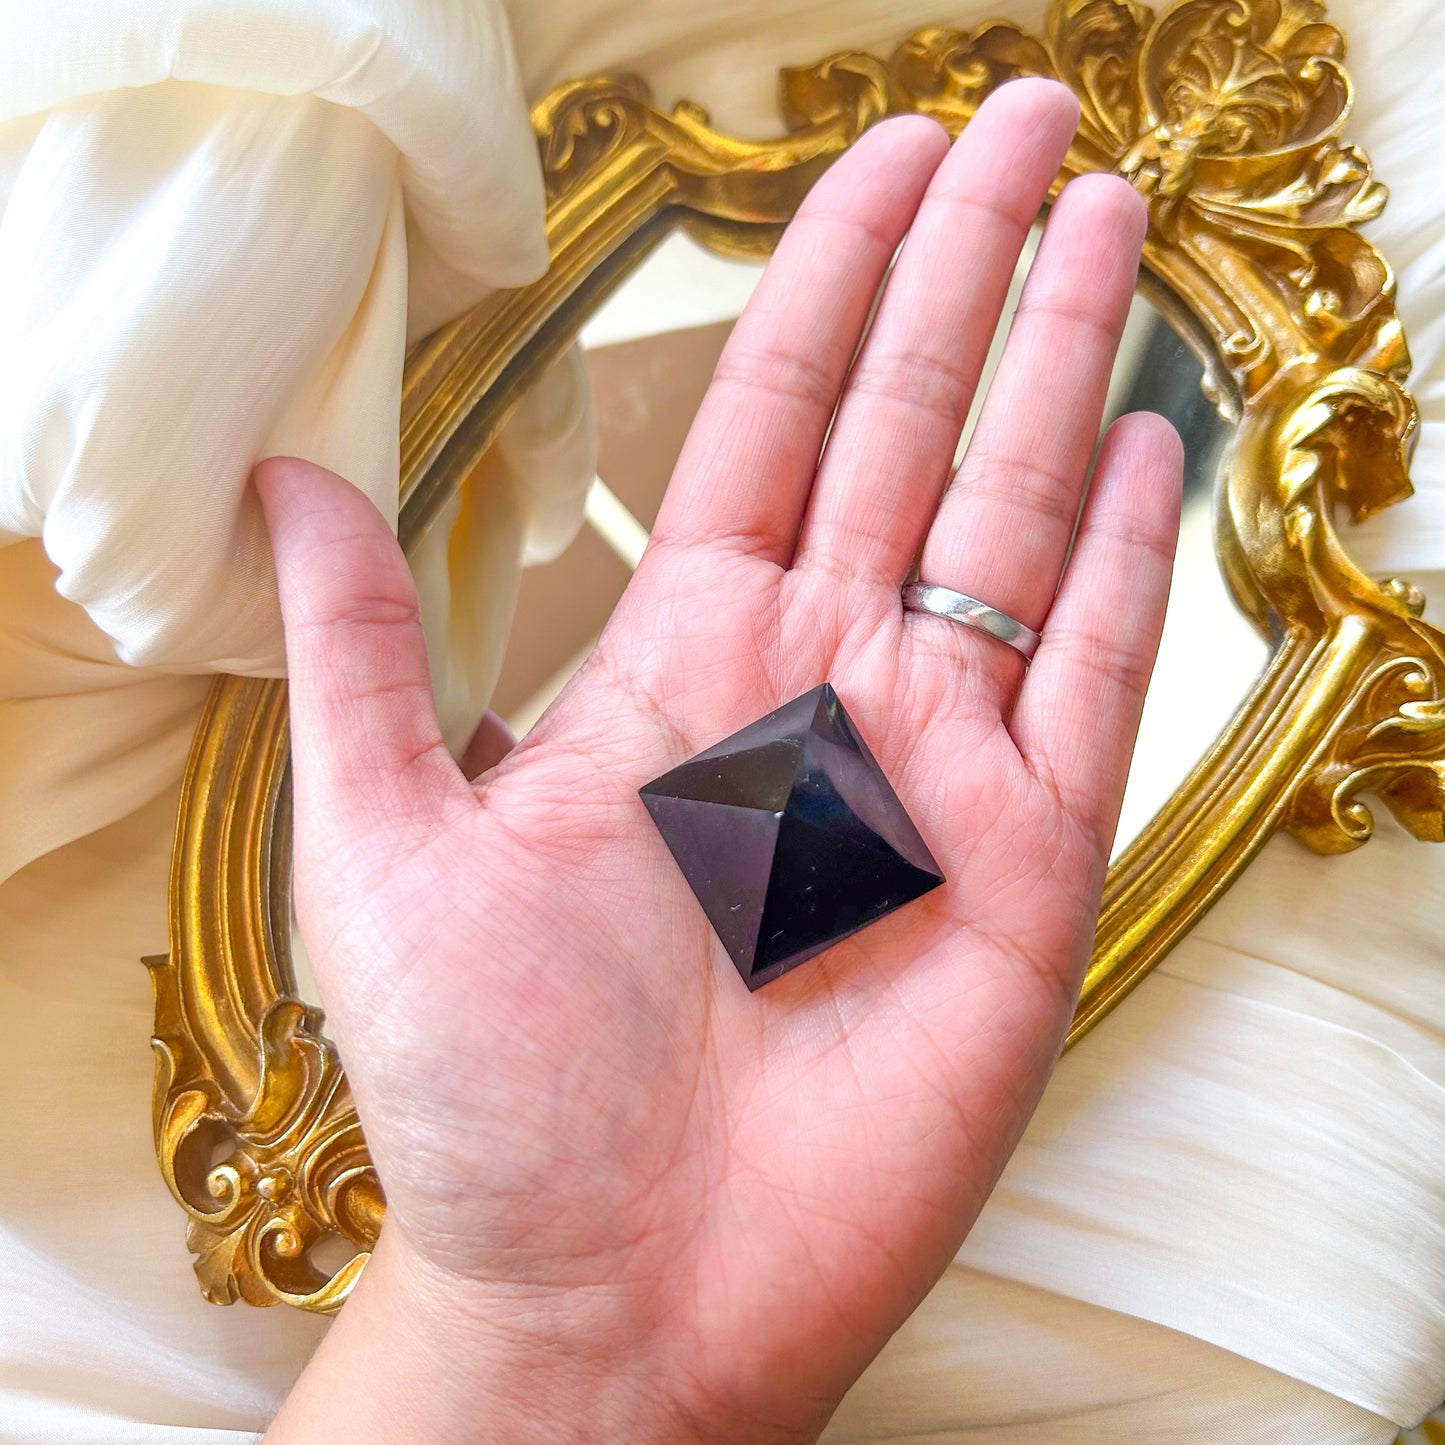 Obsidian Pyramid Crystal